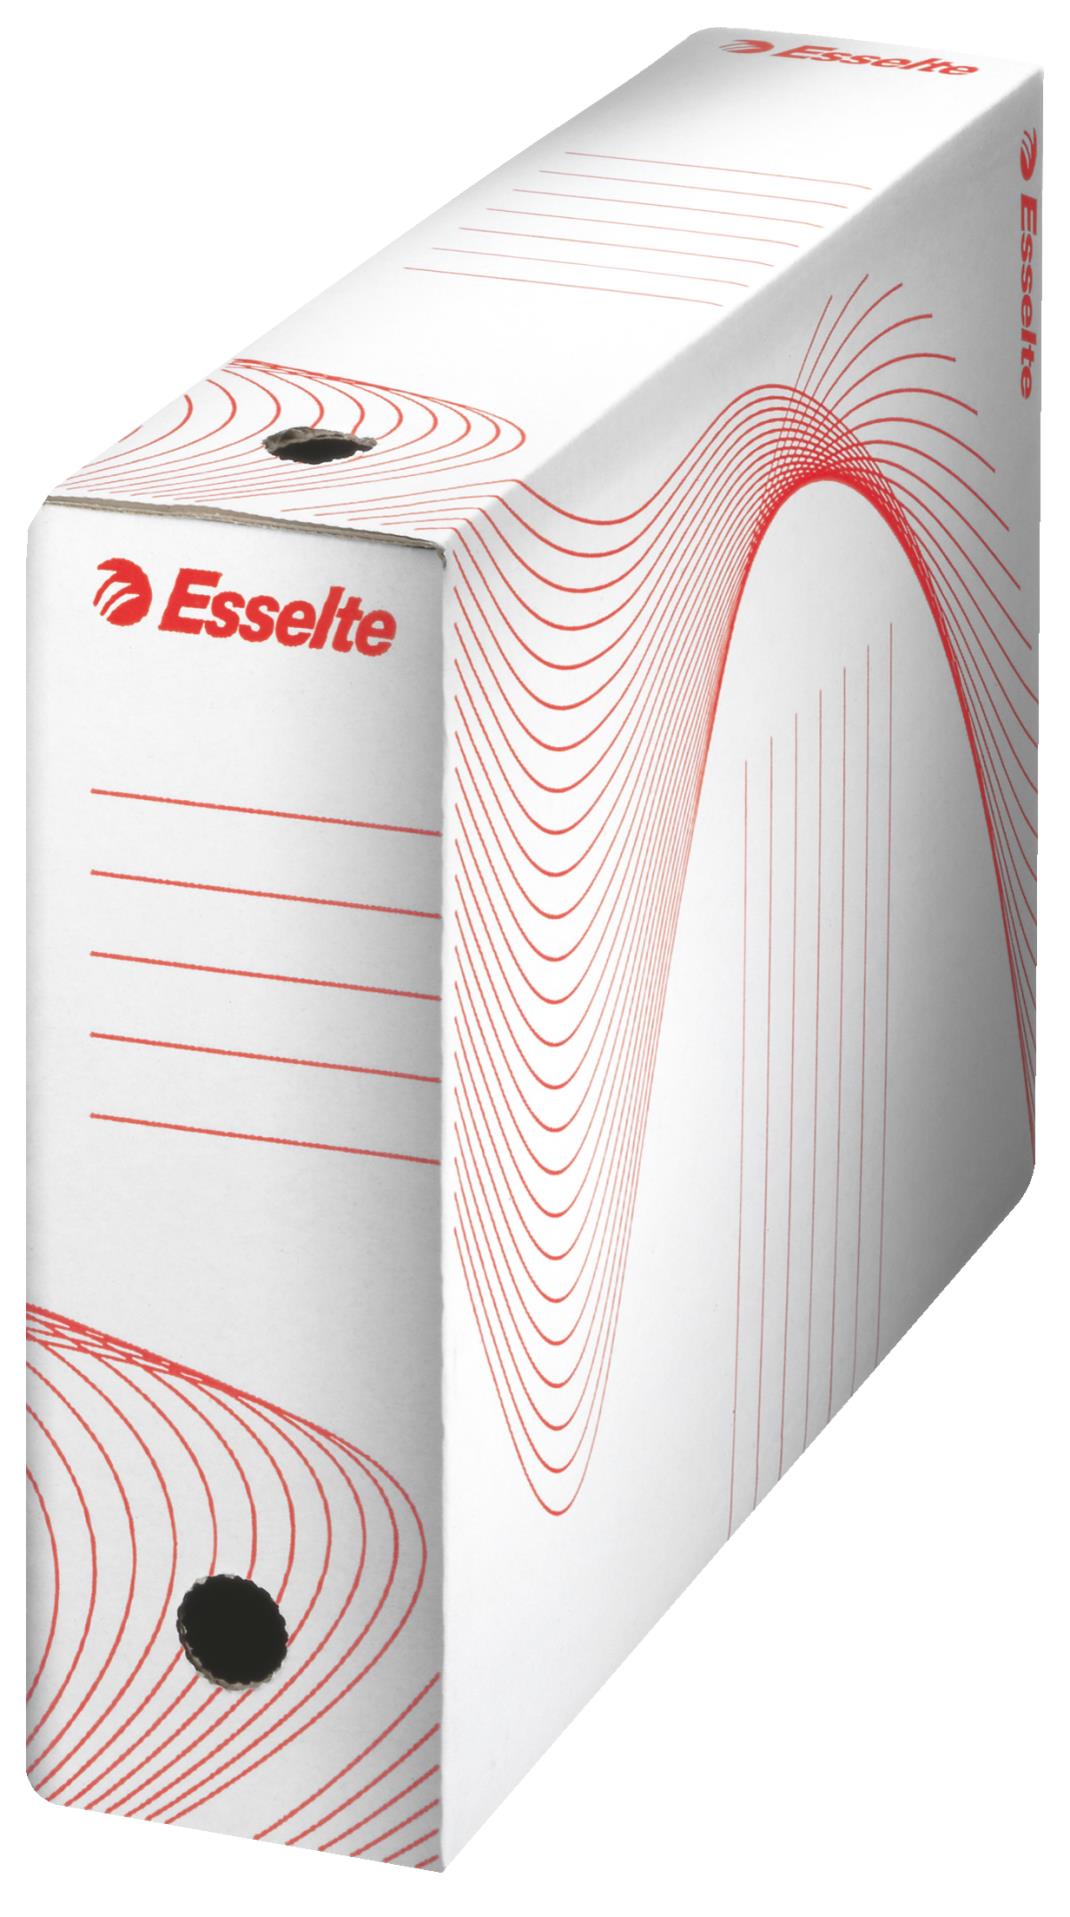 Archivační krabice Esselte - 8,0 x 24,5 x 34,5 cm, bílá